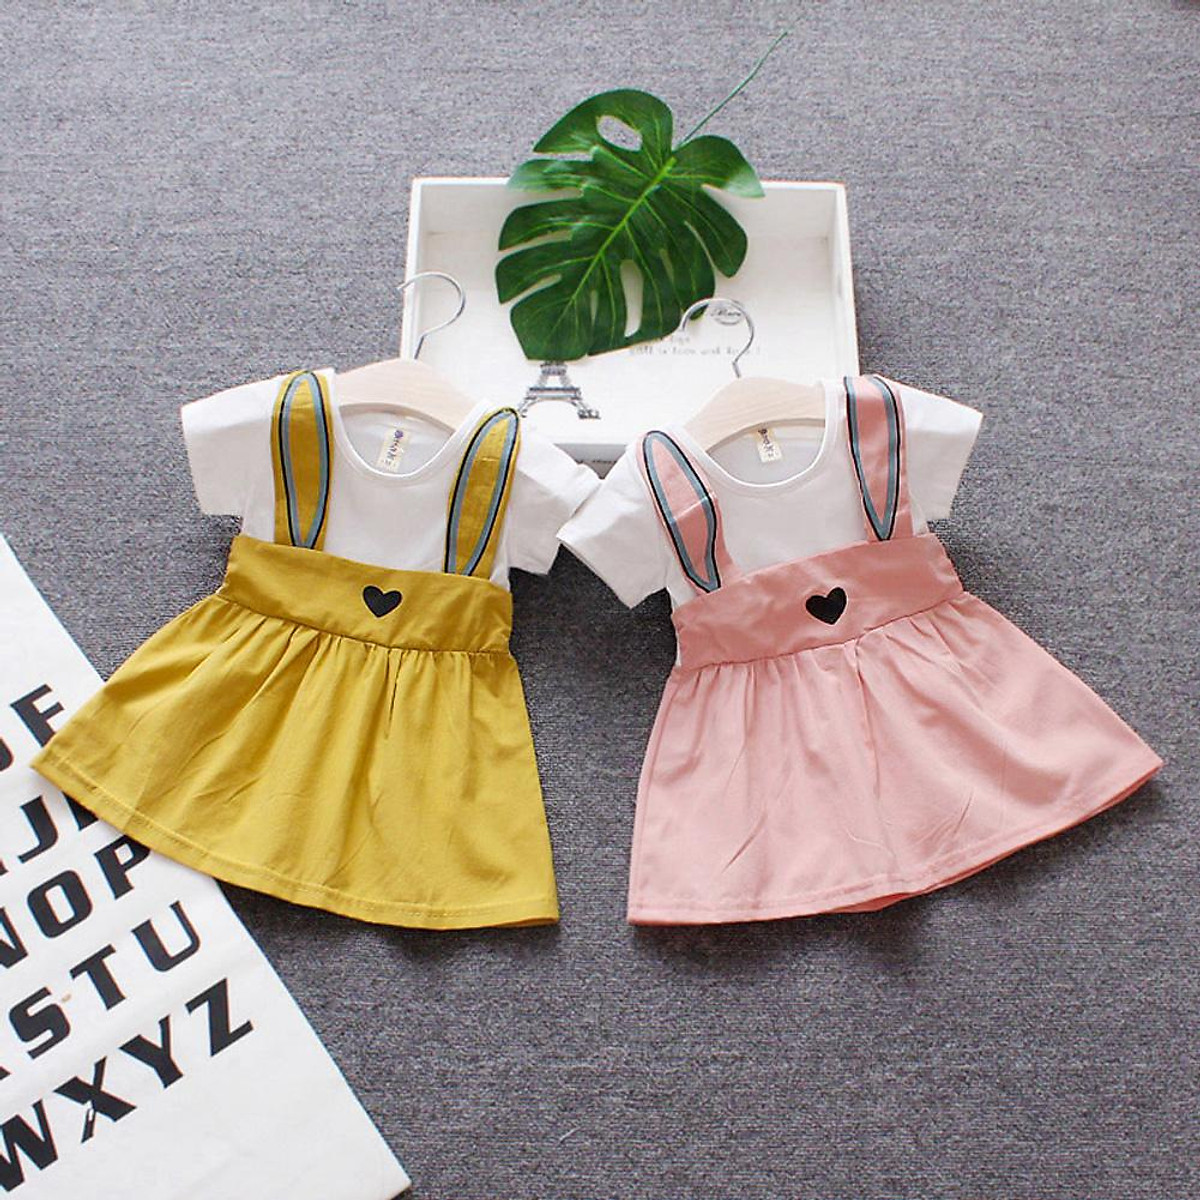 Mua Kids Girl Dress Cartoon Summer Cotton Short Sleeve Dress for Baby  Infants